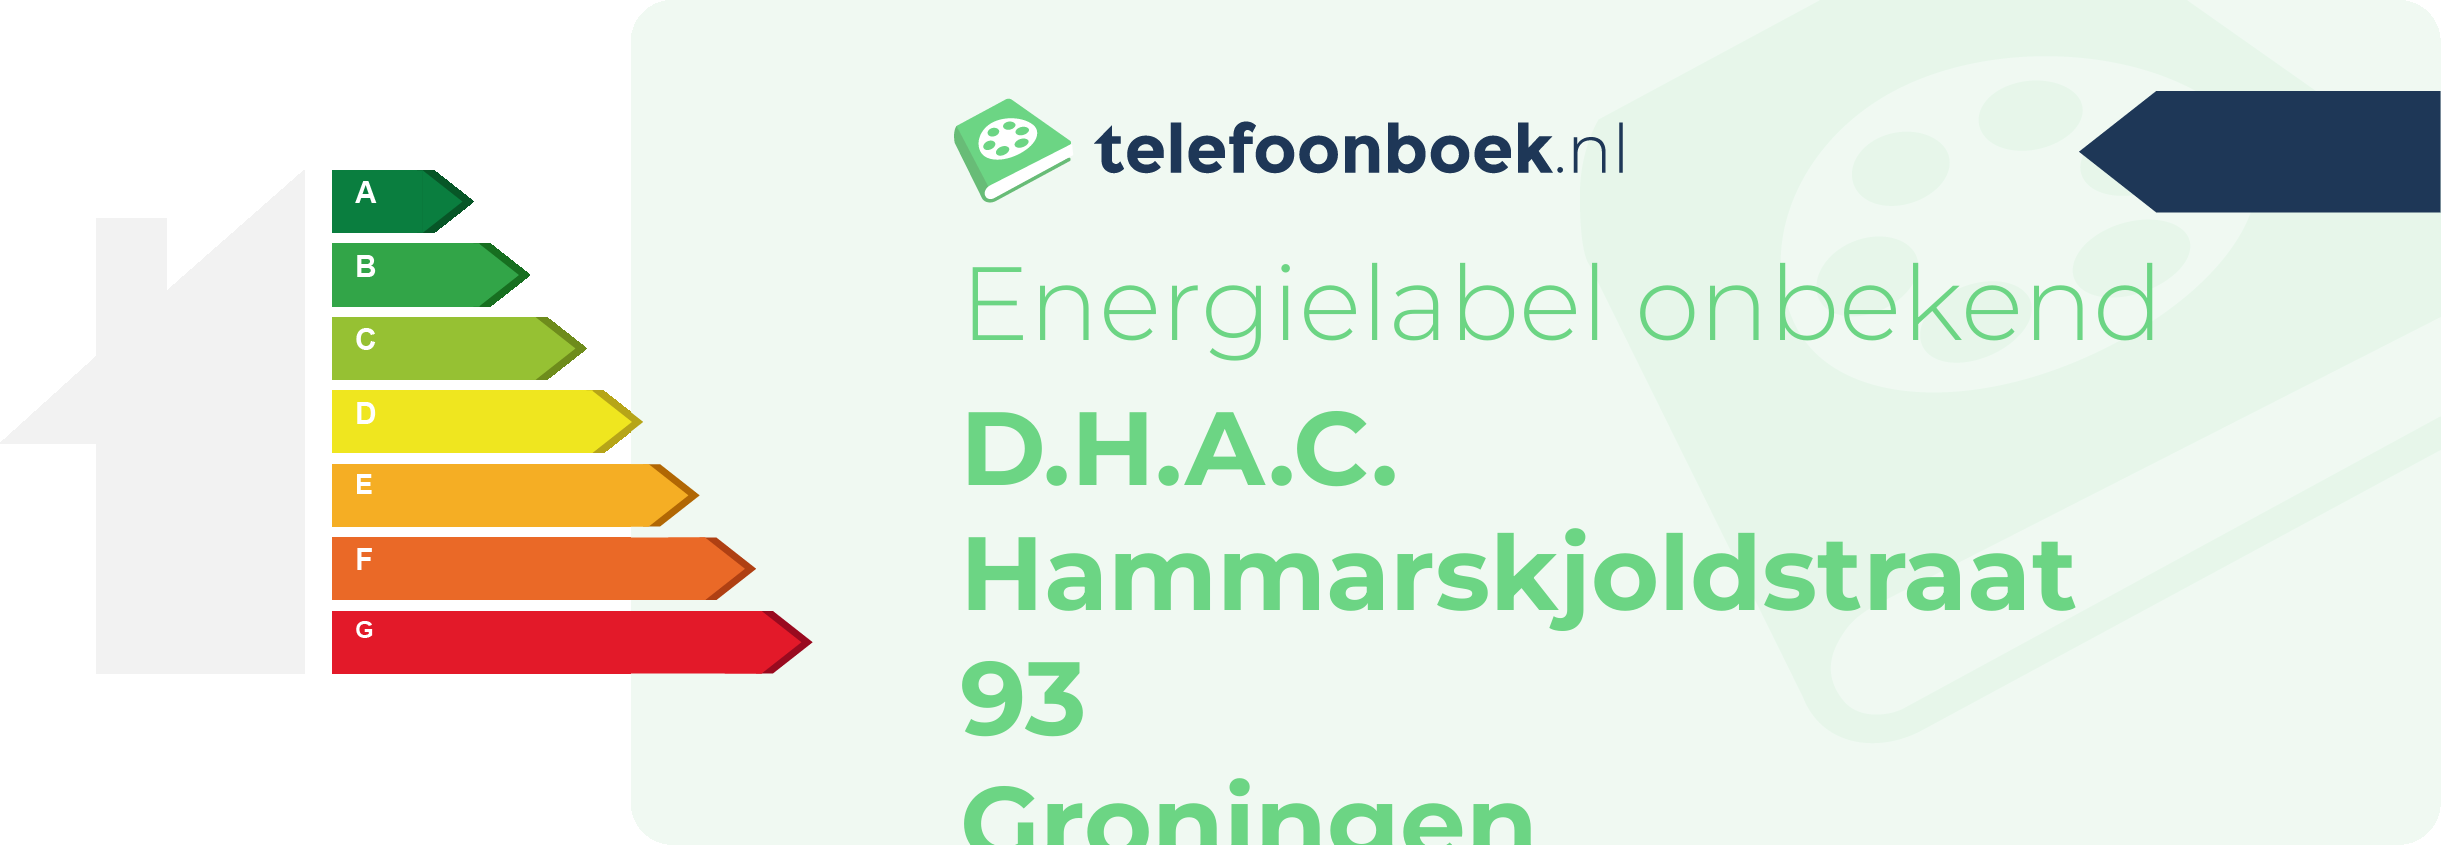 Energielabel D.H.A.C. Hammarskjoldstraat 93 Groningen